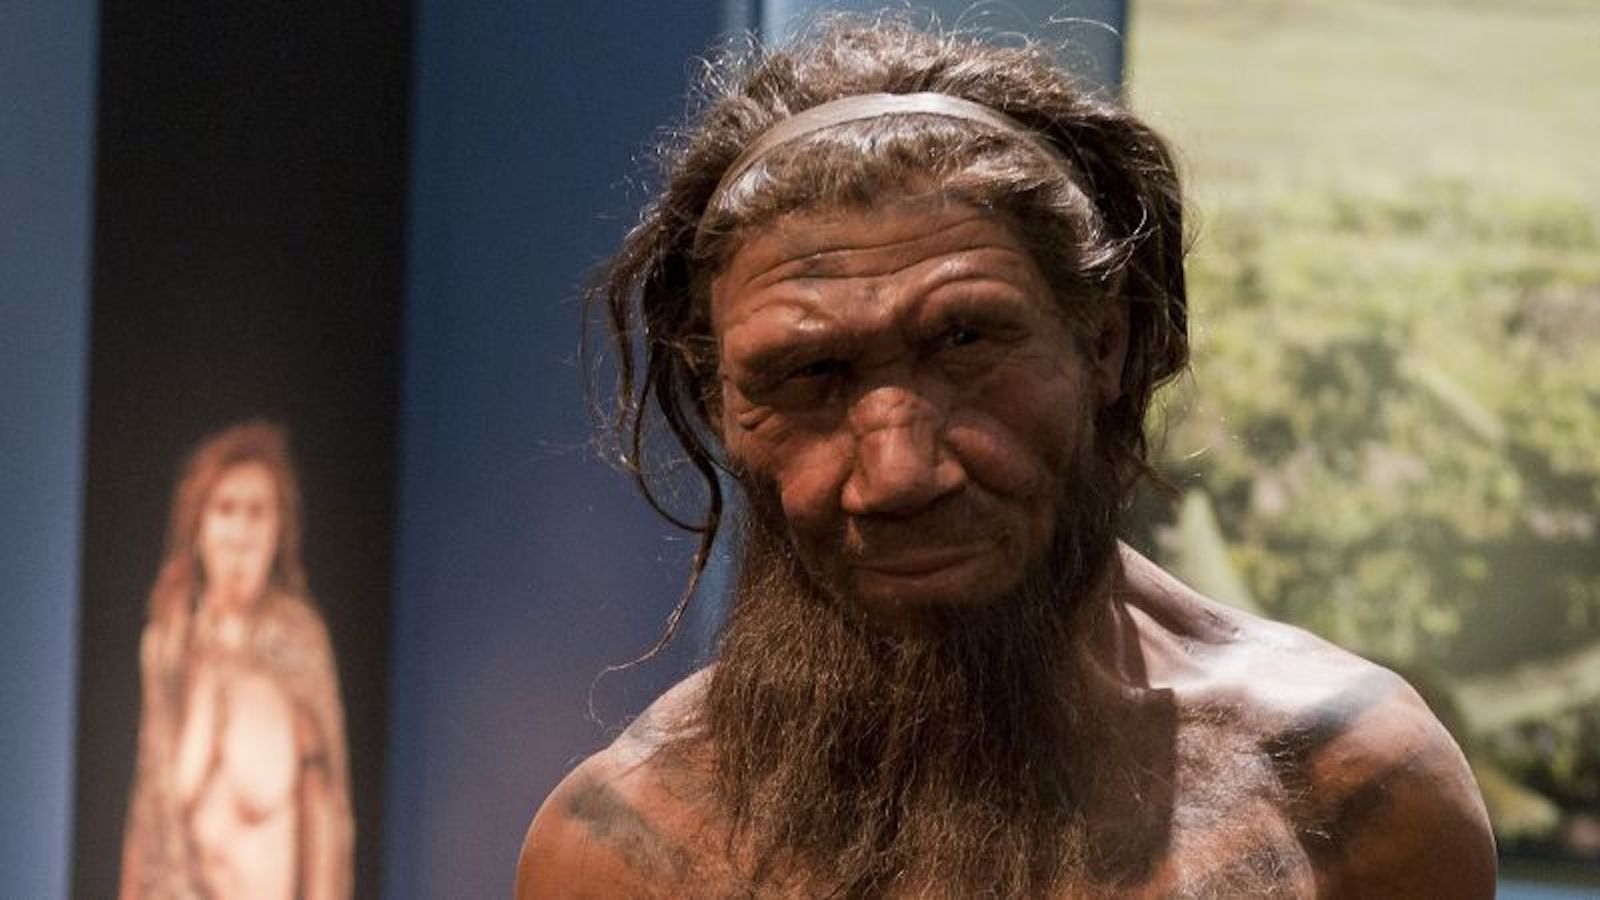 Audio: Pautas para afrontar el dolor crónico. Genes neandertales pueden  favorecer ser madrugador